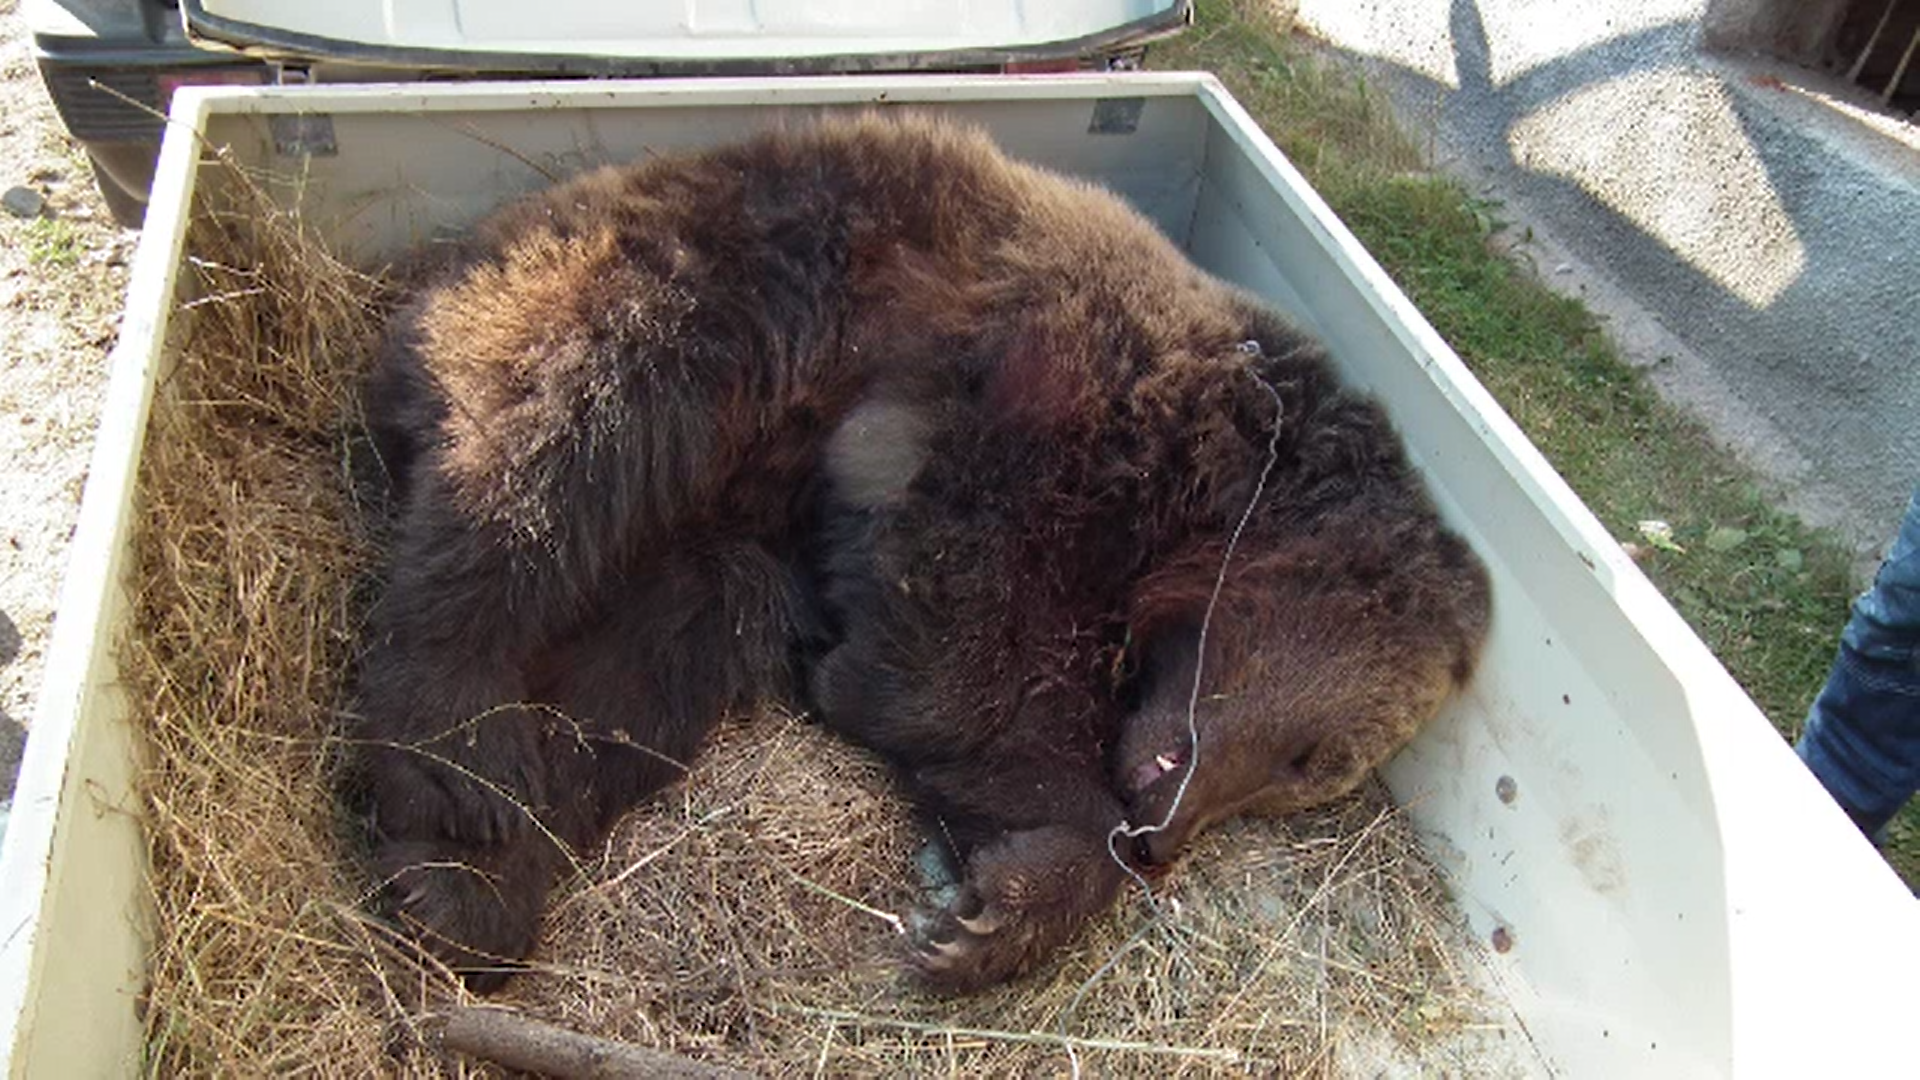 Trei bărbaţi au prins un urs și l-au ucis lent cu ajutorul unei sulițe. Au fost prinși când hăcuiau prada